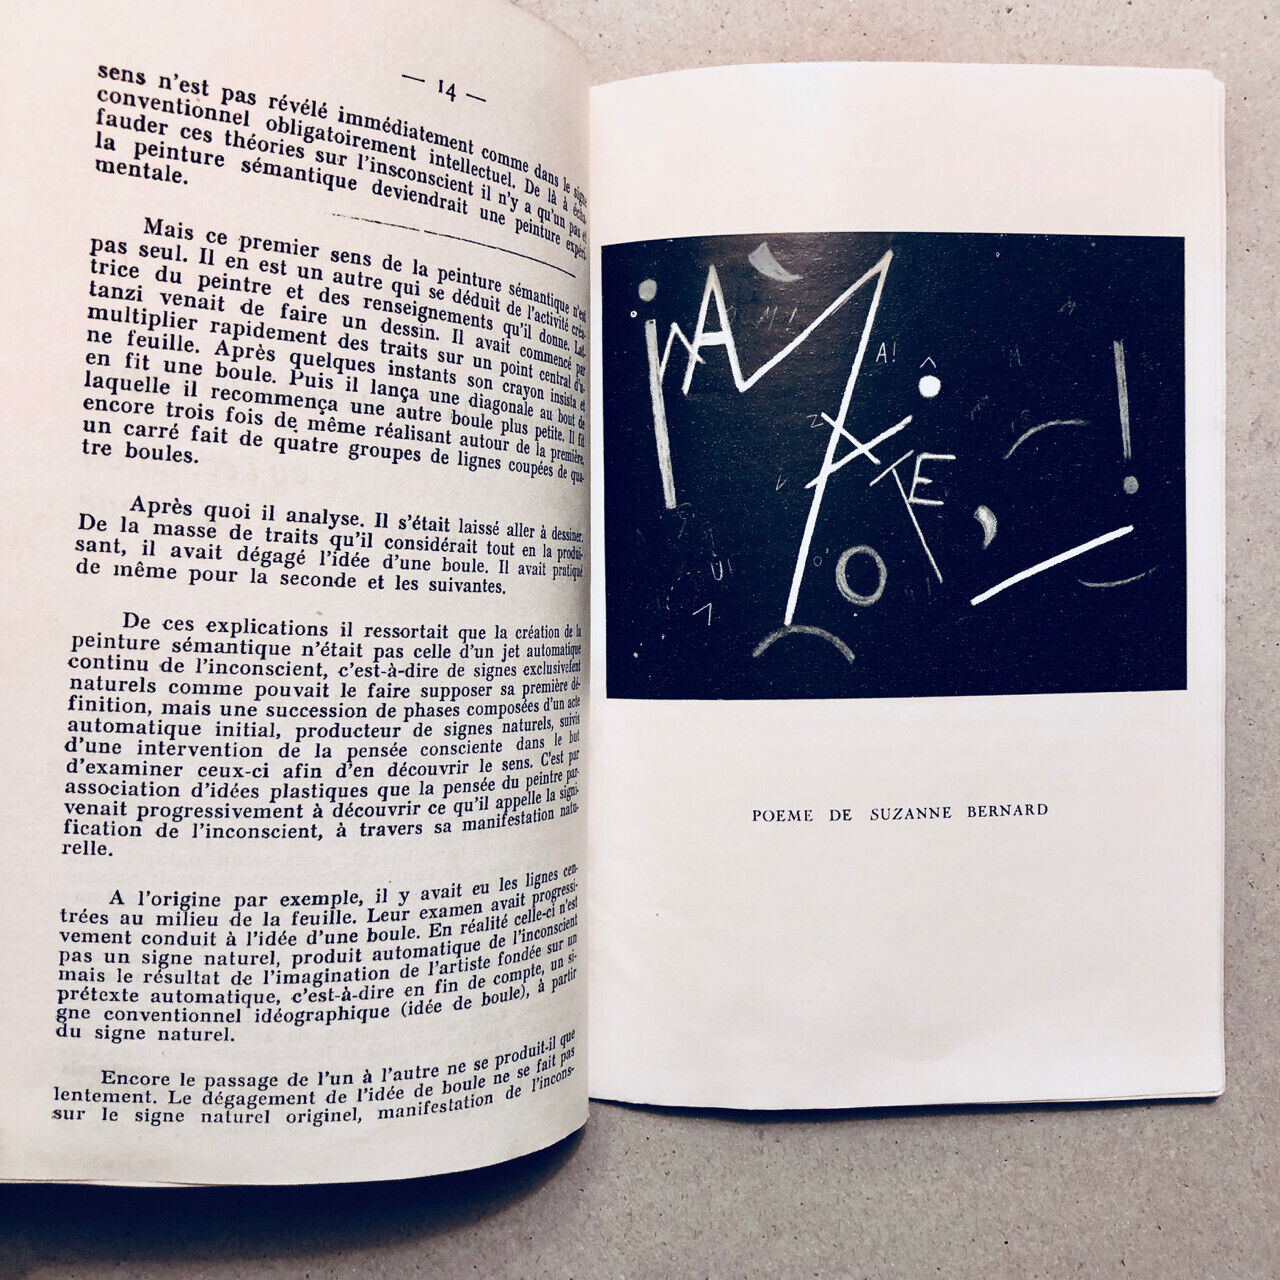 [Robert Estivals] — -Grâmmes — n° 4 — Revue du Groupe Ultra-Lettriste — éo 1959.